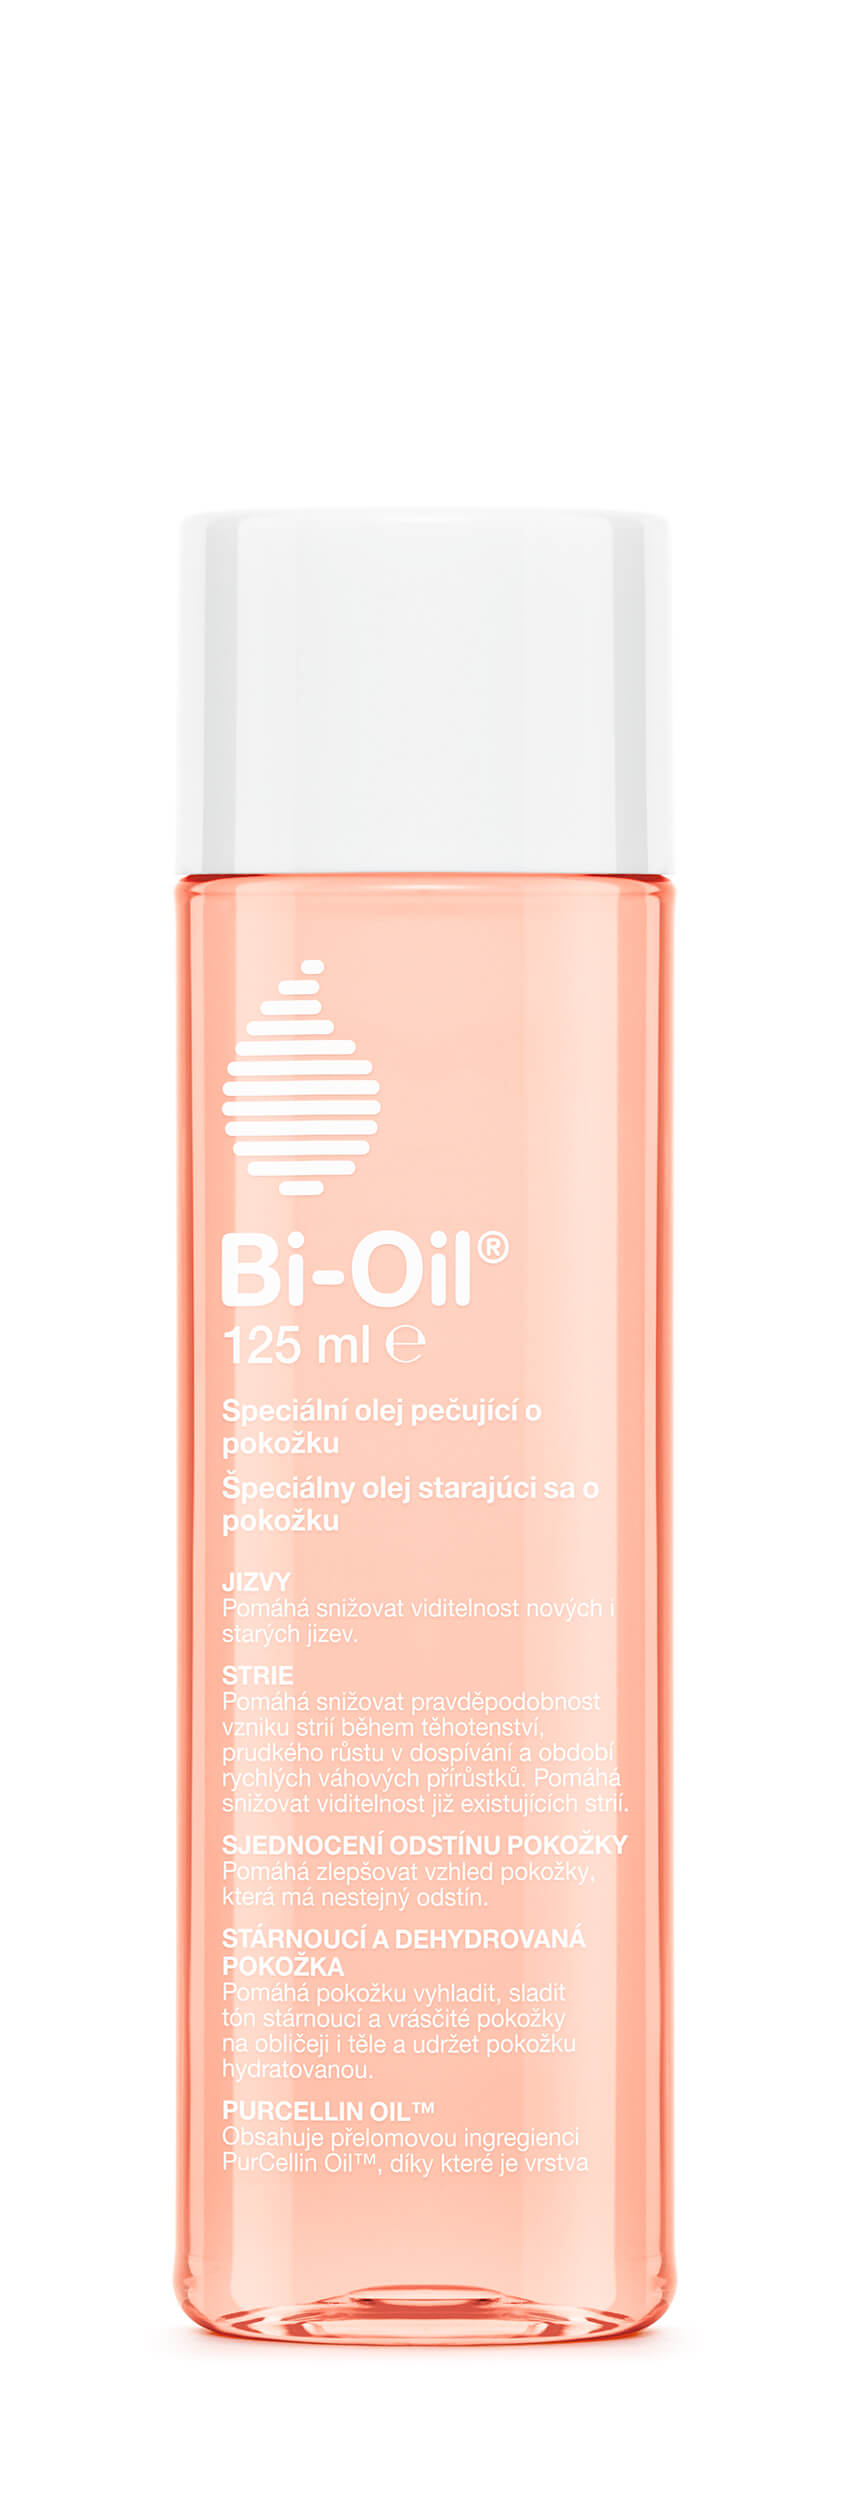 Bi-Oil Všestranný prírodný olej Bi-Oil Purcellin Oil 125 ml